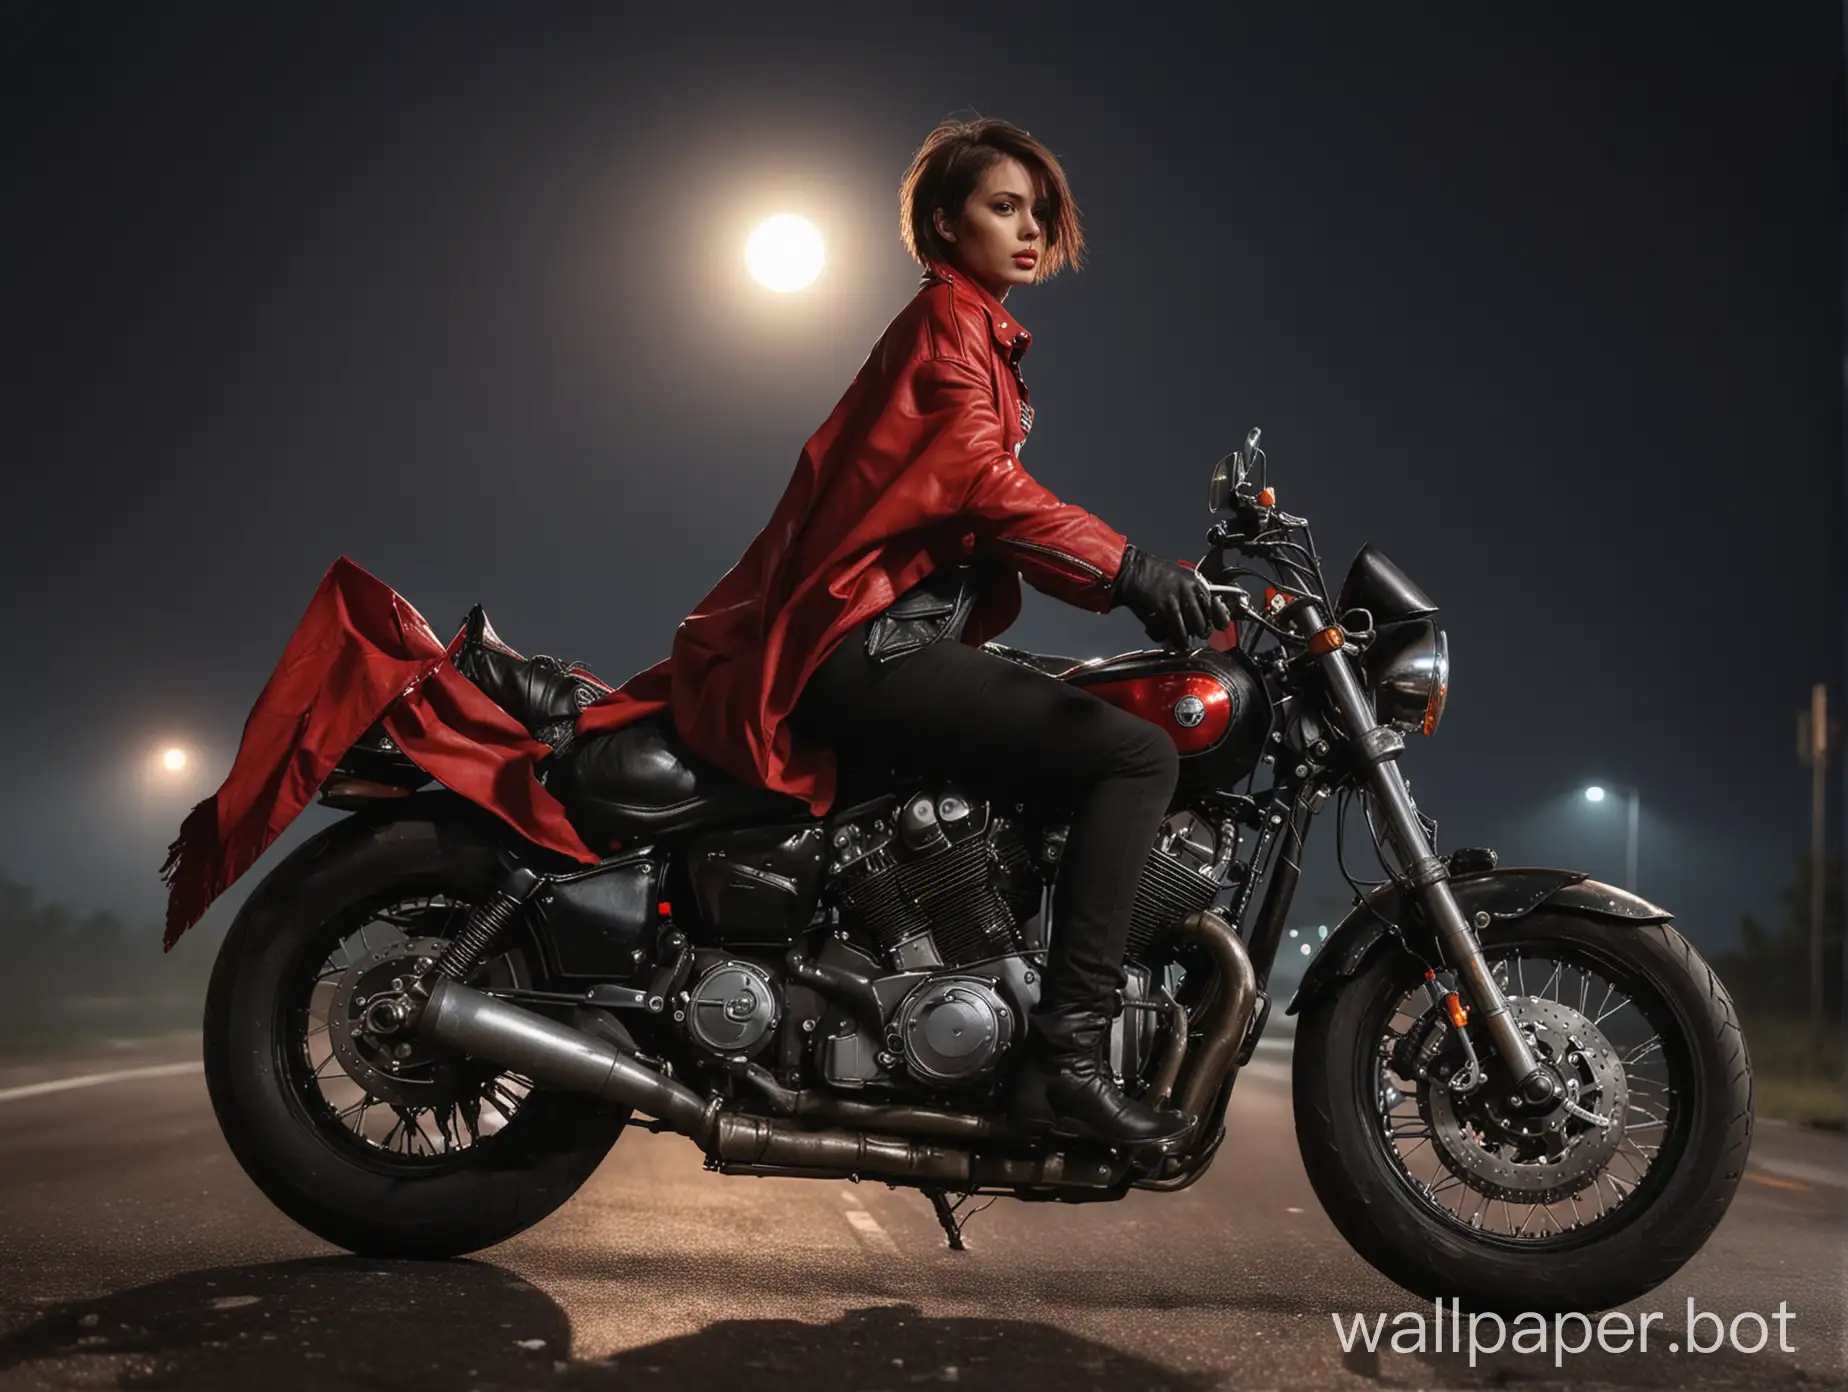 сексуальная девушка с короткими волосами в черной кожаной куртке, с большой грудью едет на мотоцикле по шоссе, на плечах красный плащ развивается на ветру, вид с боку, асфальт горит под колесами мотоцикла, на небе яркая луна, темный фон